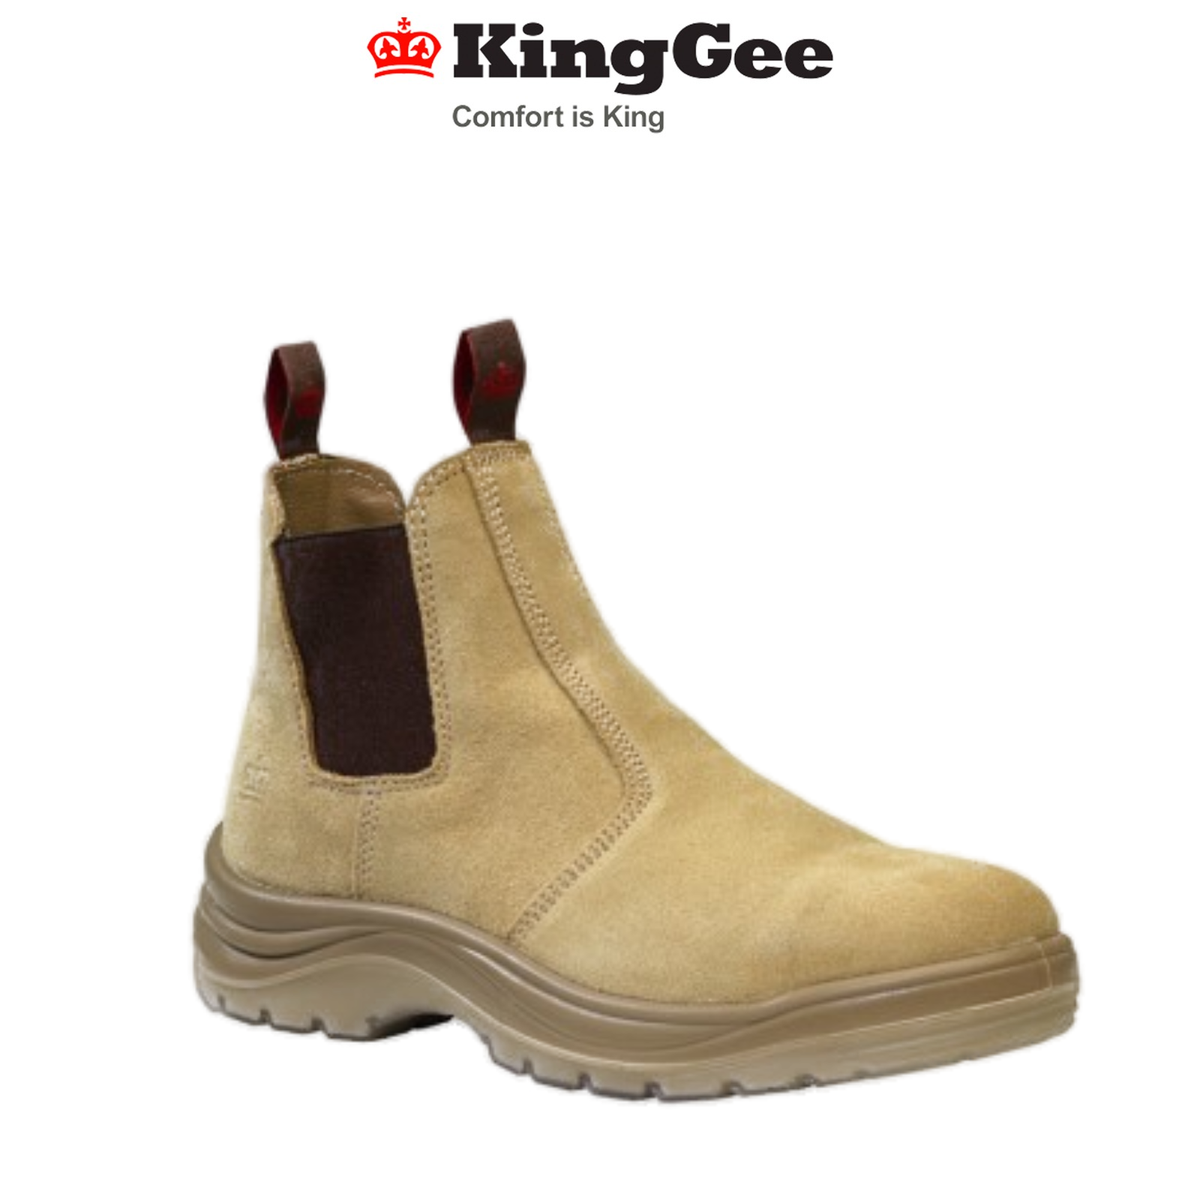 KingGee Mens Flinders Suede Work Boots Steel Safety Cap Heat Resistant K25180